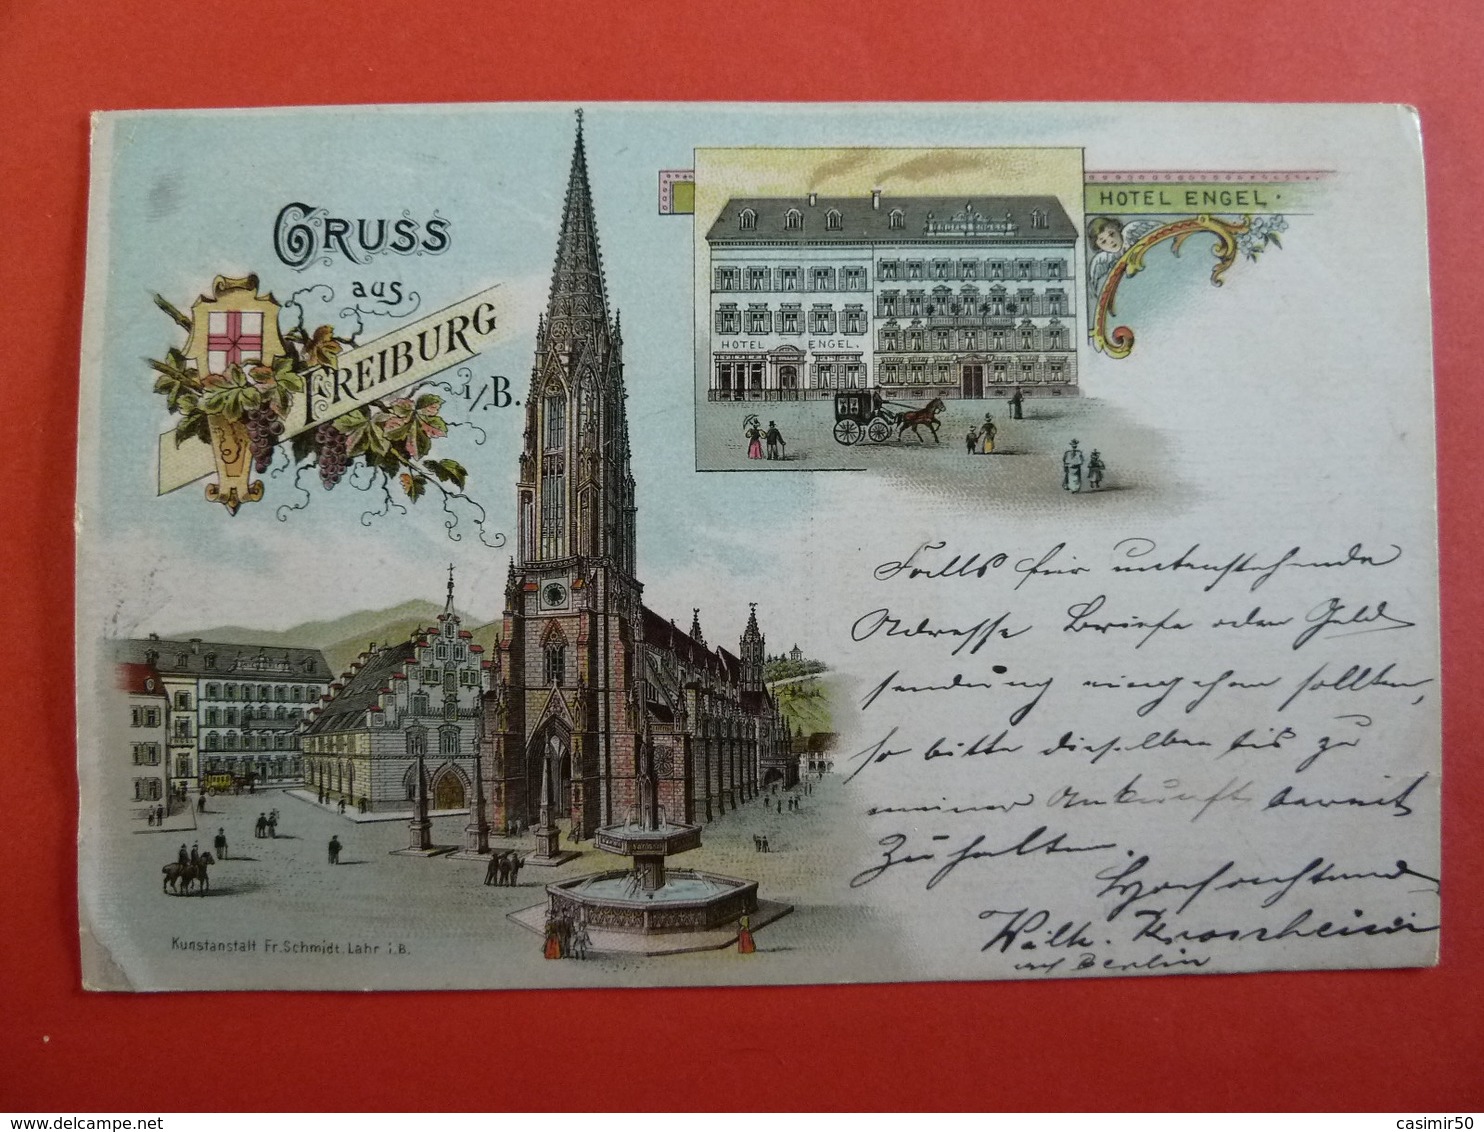 GRUSS AUS FREIBURG - Freiburg I. Br.